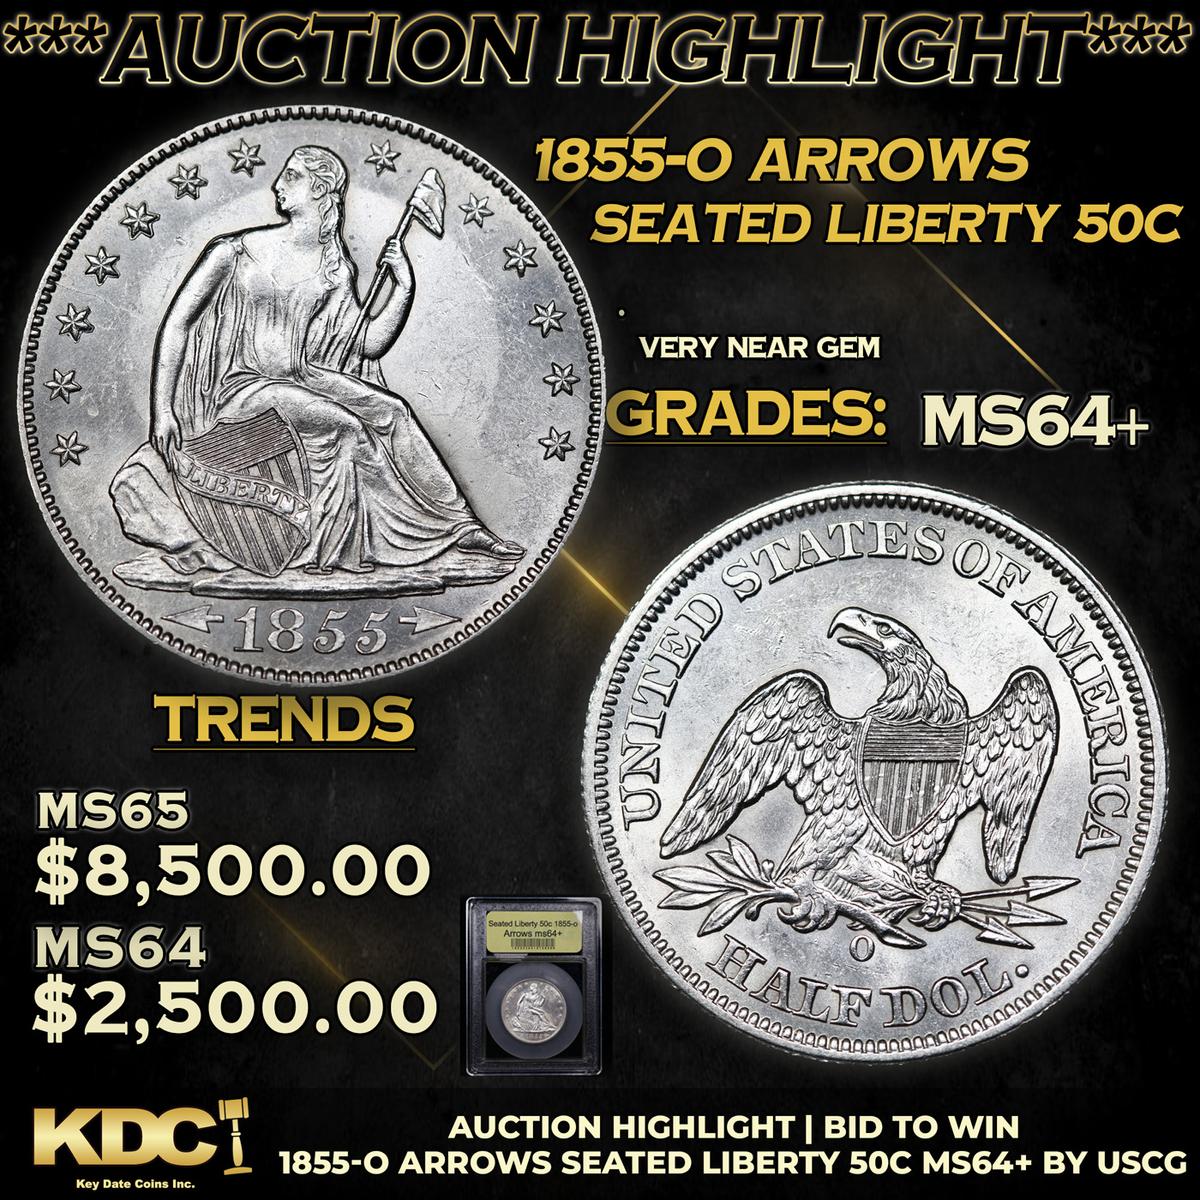 ***Auction Highlight*** 1855-o Arrows Seated Half Dollar 50c Graded Choice+ Unc By USCG (fc)